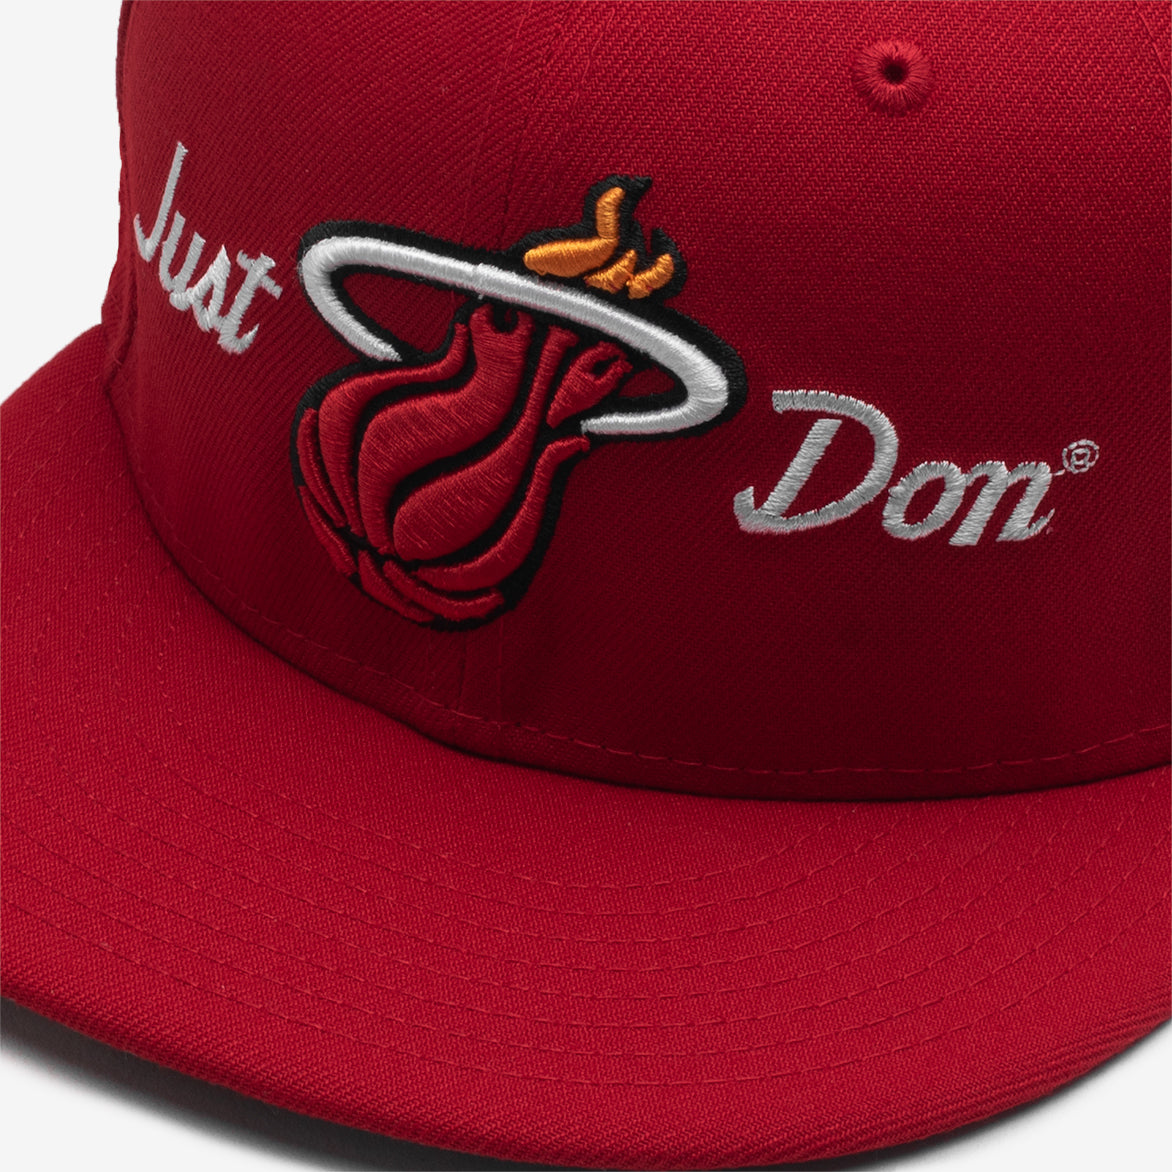 NBA New Era Miami Heat Hat – JUST DON